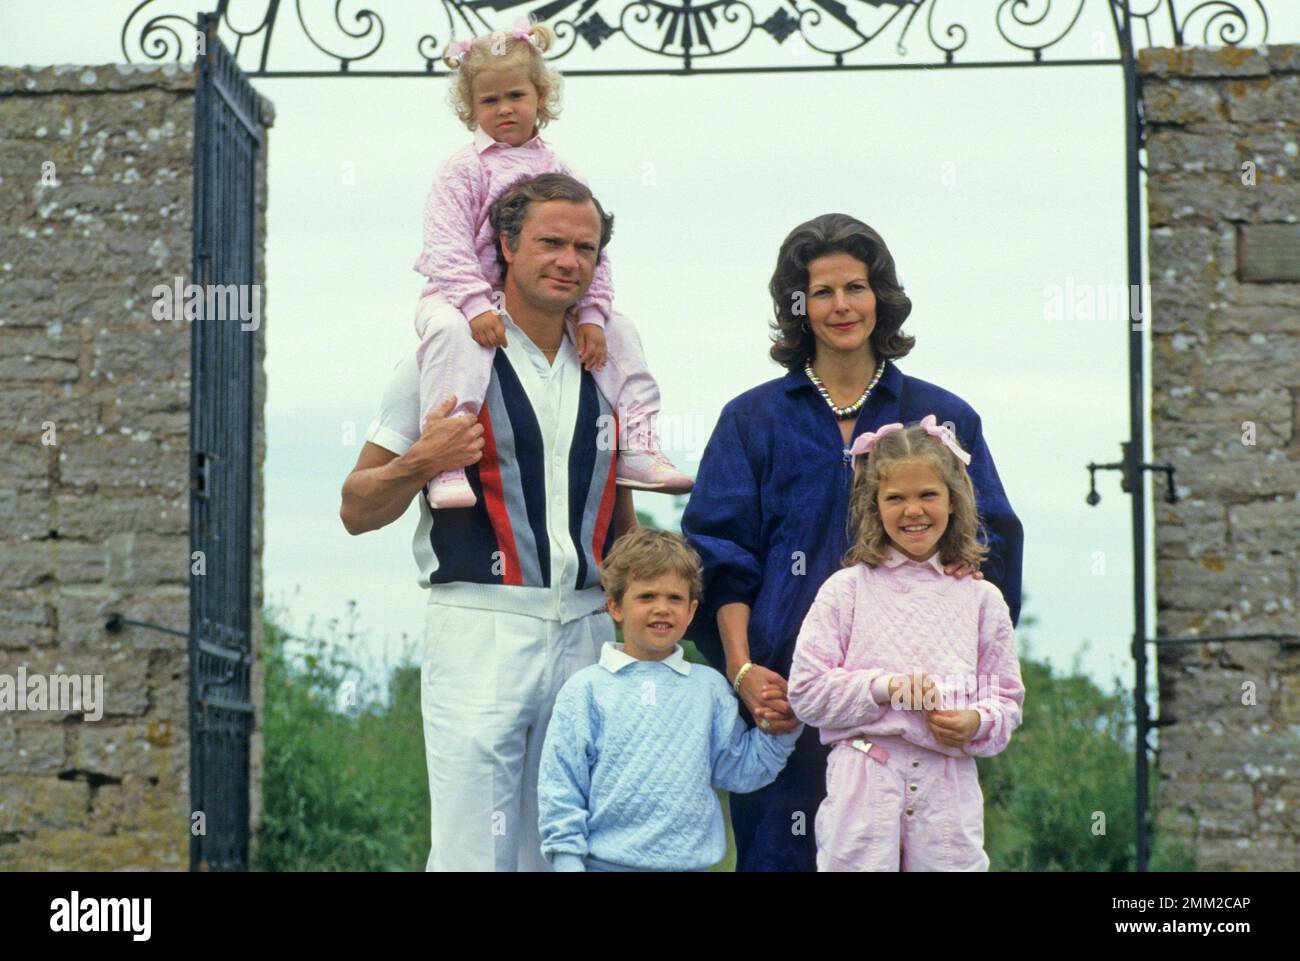 Carl XVI Gustaf, re di Svezia. Nato il 30 aprile 1946. Il re Carlo XVI Gustaf Regina Silvia i loro figli, principessa Madeleine, principessa corona Victoria, principe Carl Philip, sull'isola Öland 1985. Foto Stock